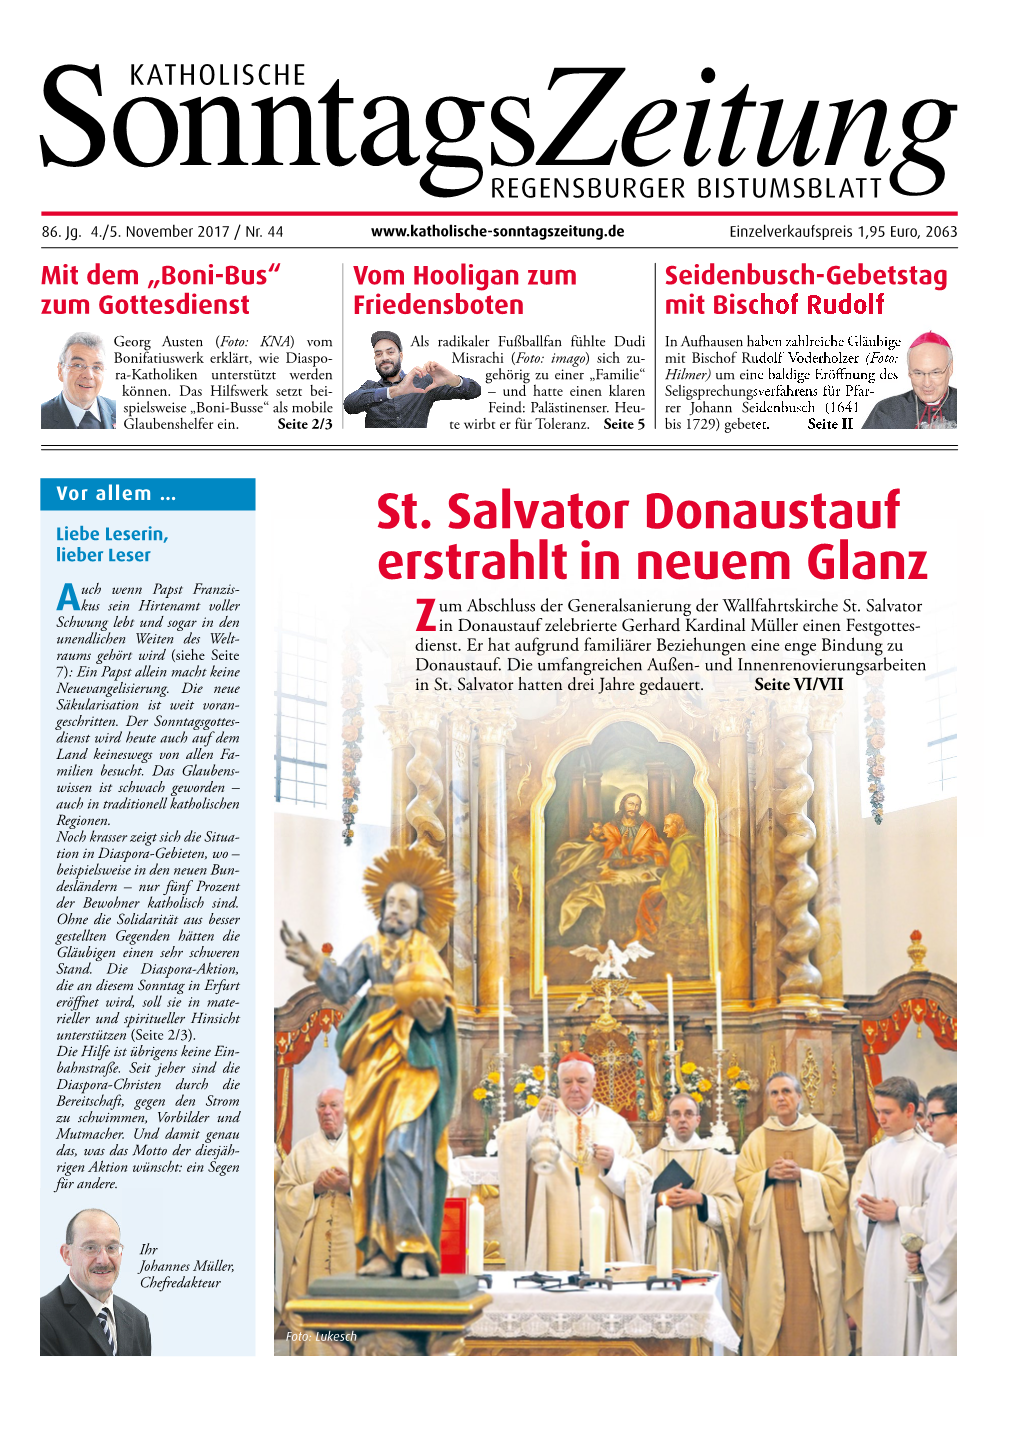 St. Salvator Donaustauf Erstrahlt in Neuem Glanz